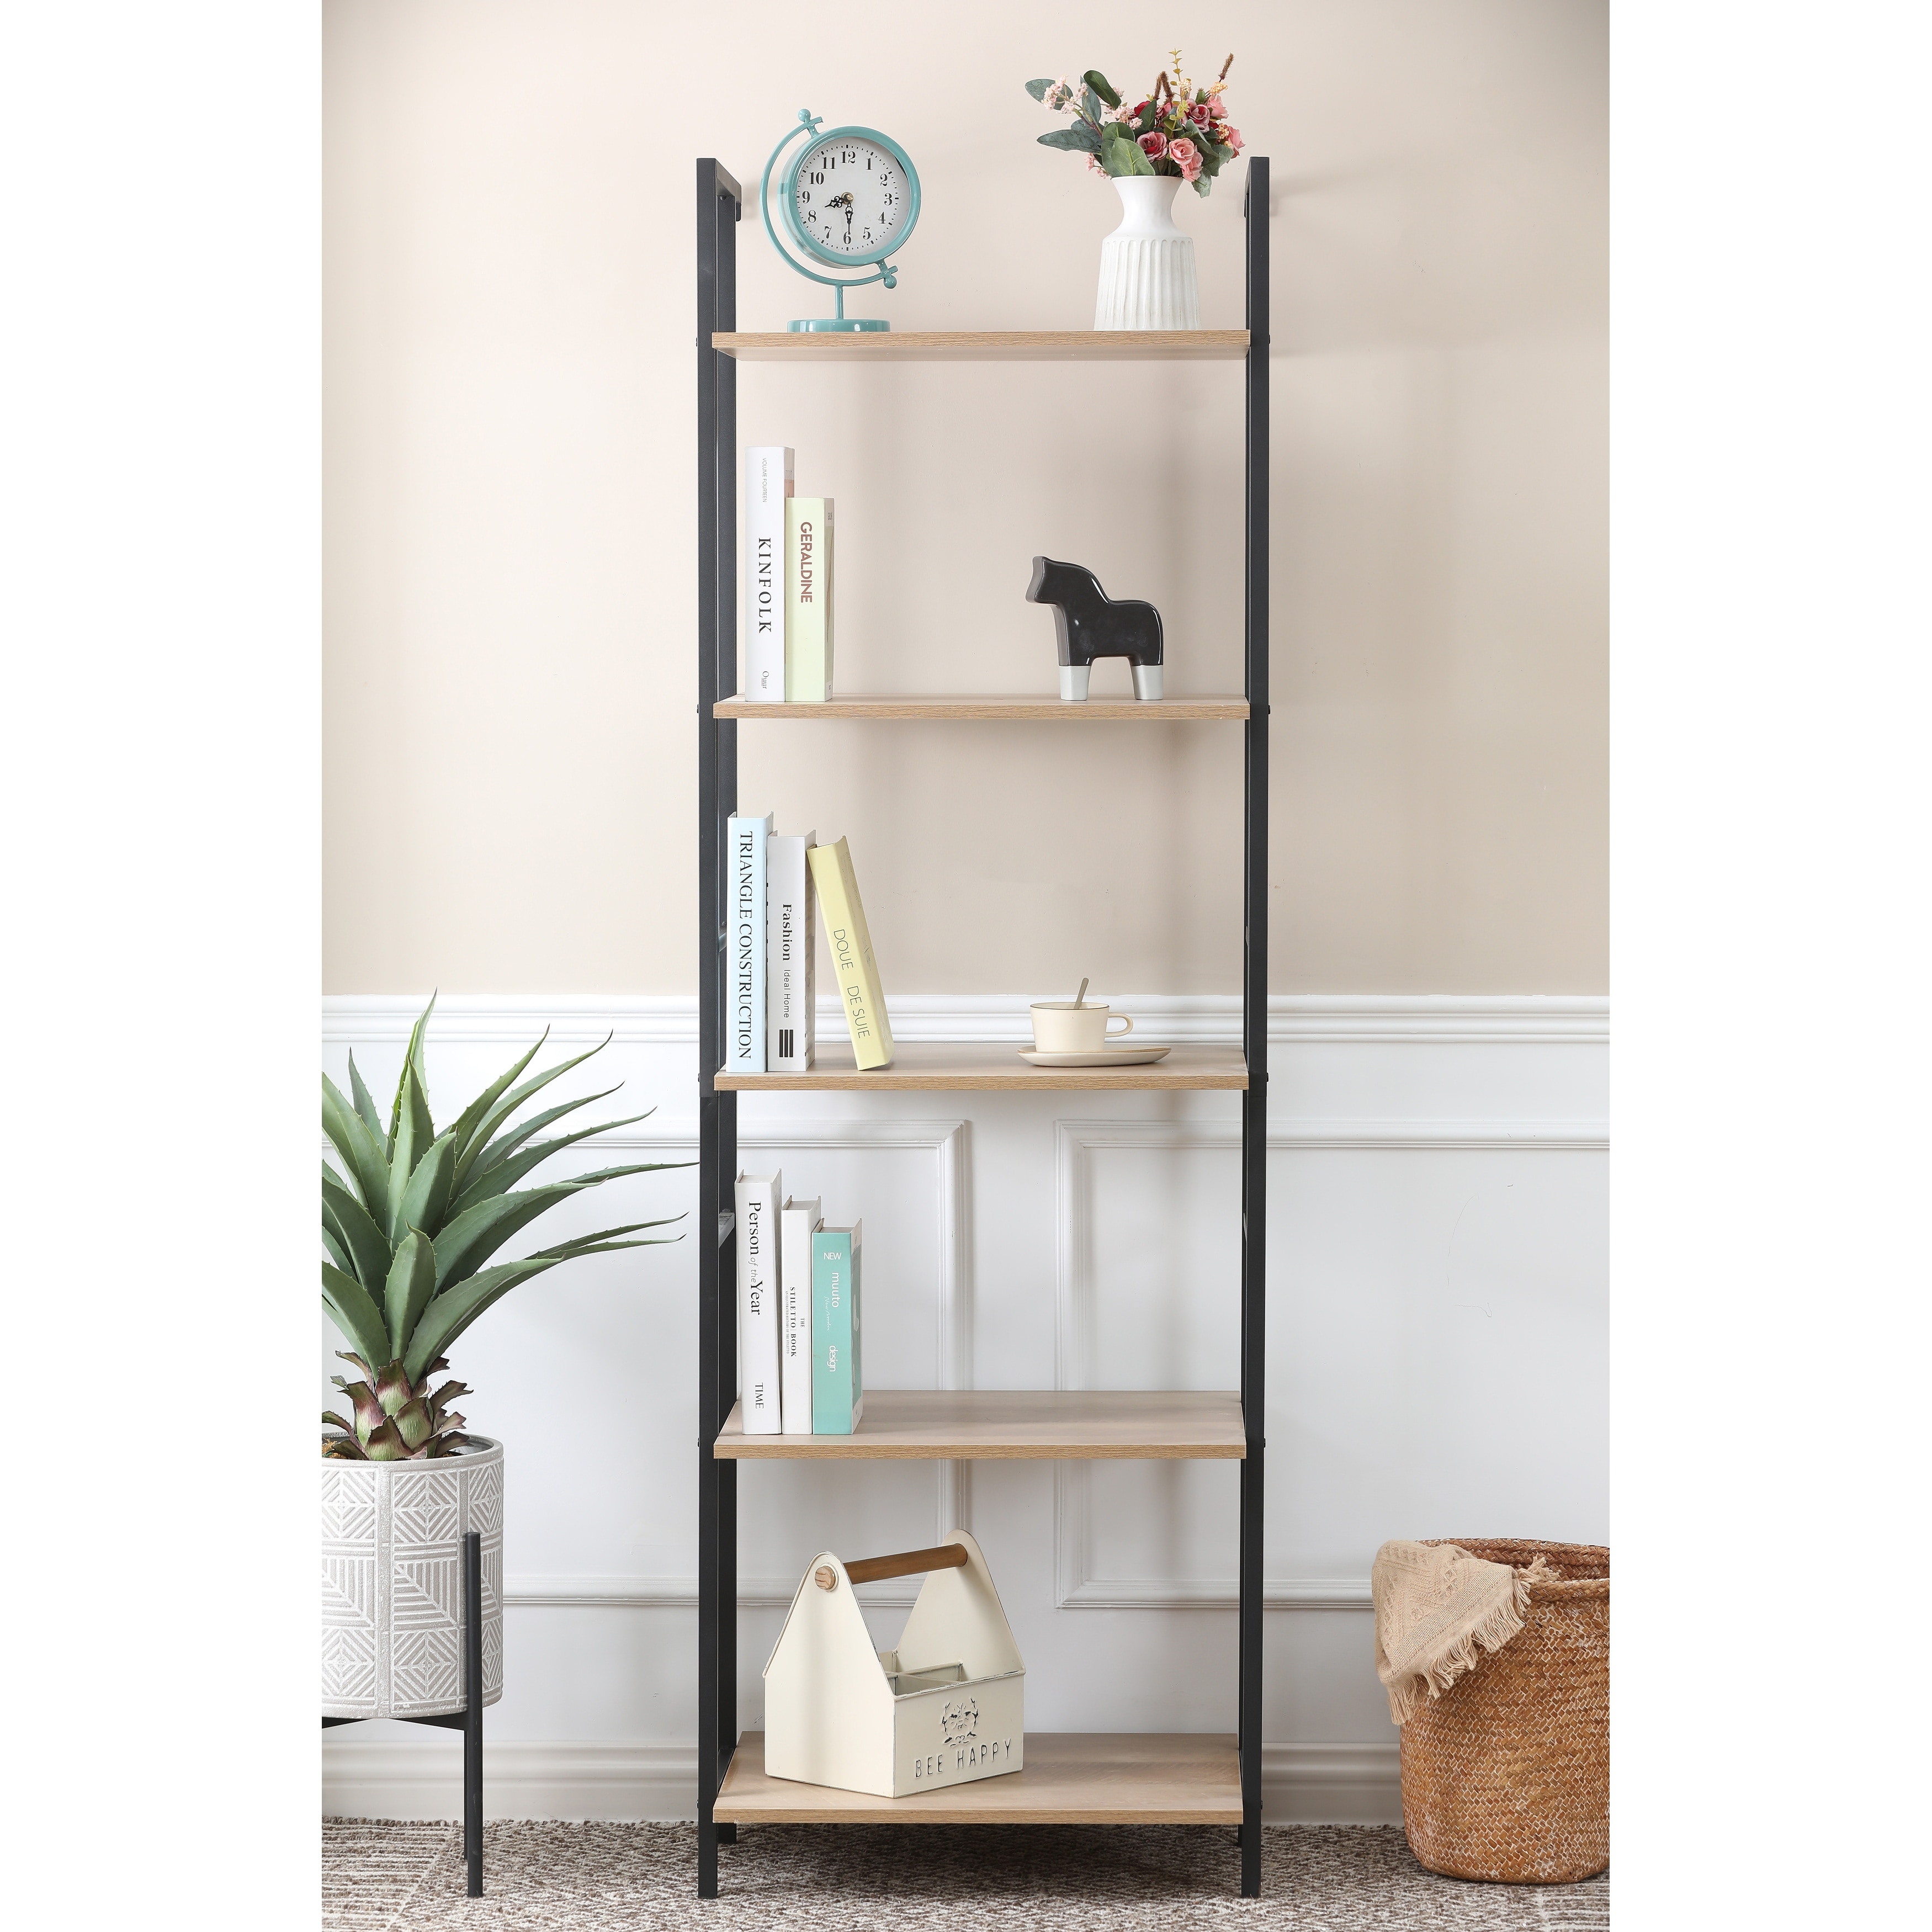 4-shelf With Storage Cabinet Light Oak Finish Bookcase - 73